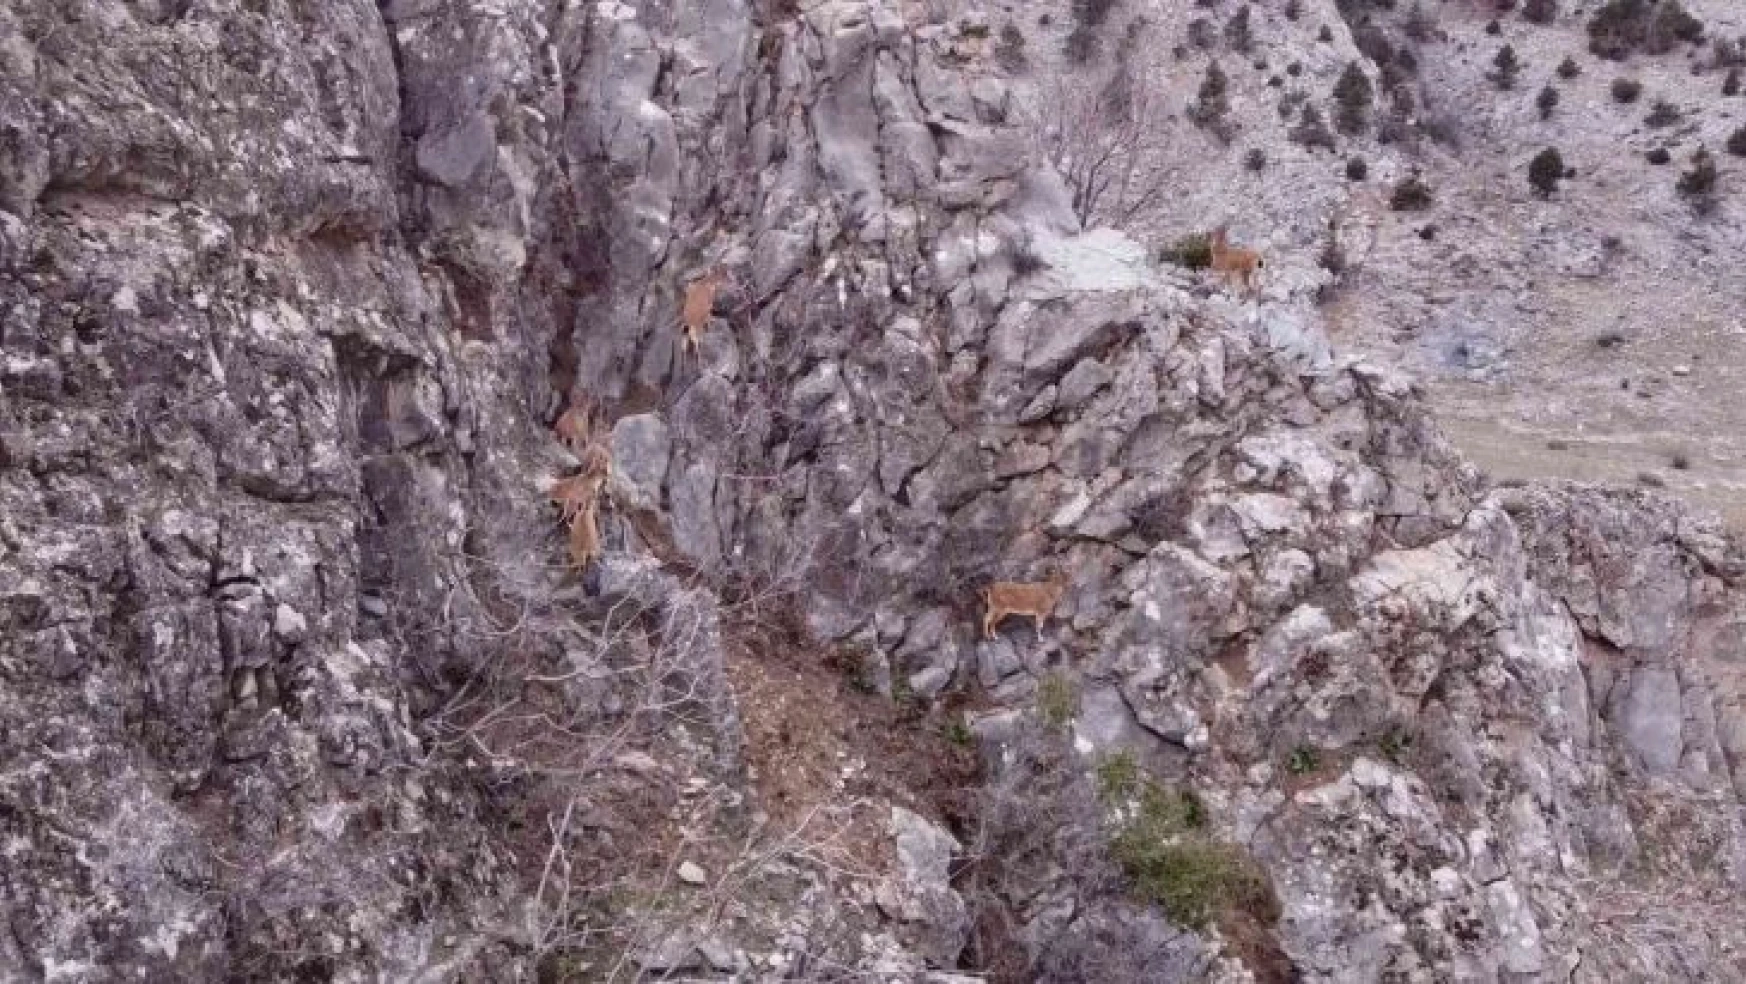 Toros Dağları'ndaki dağ keçisi sürüsü dron ile görüntülendi